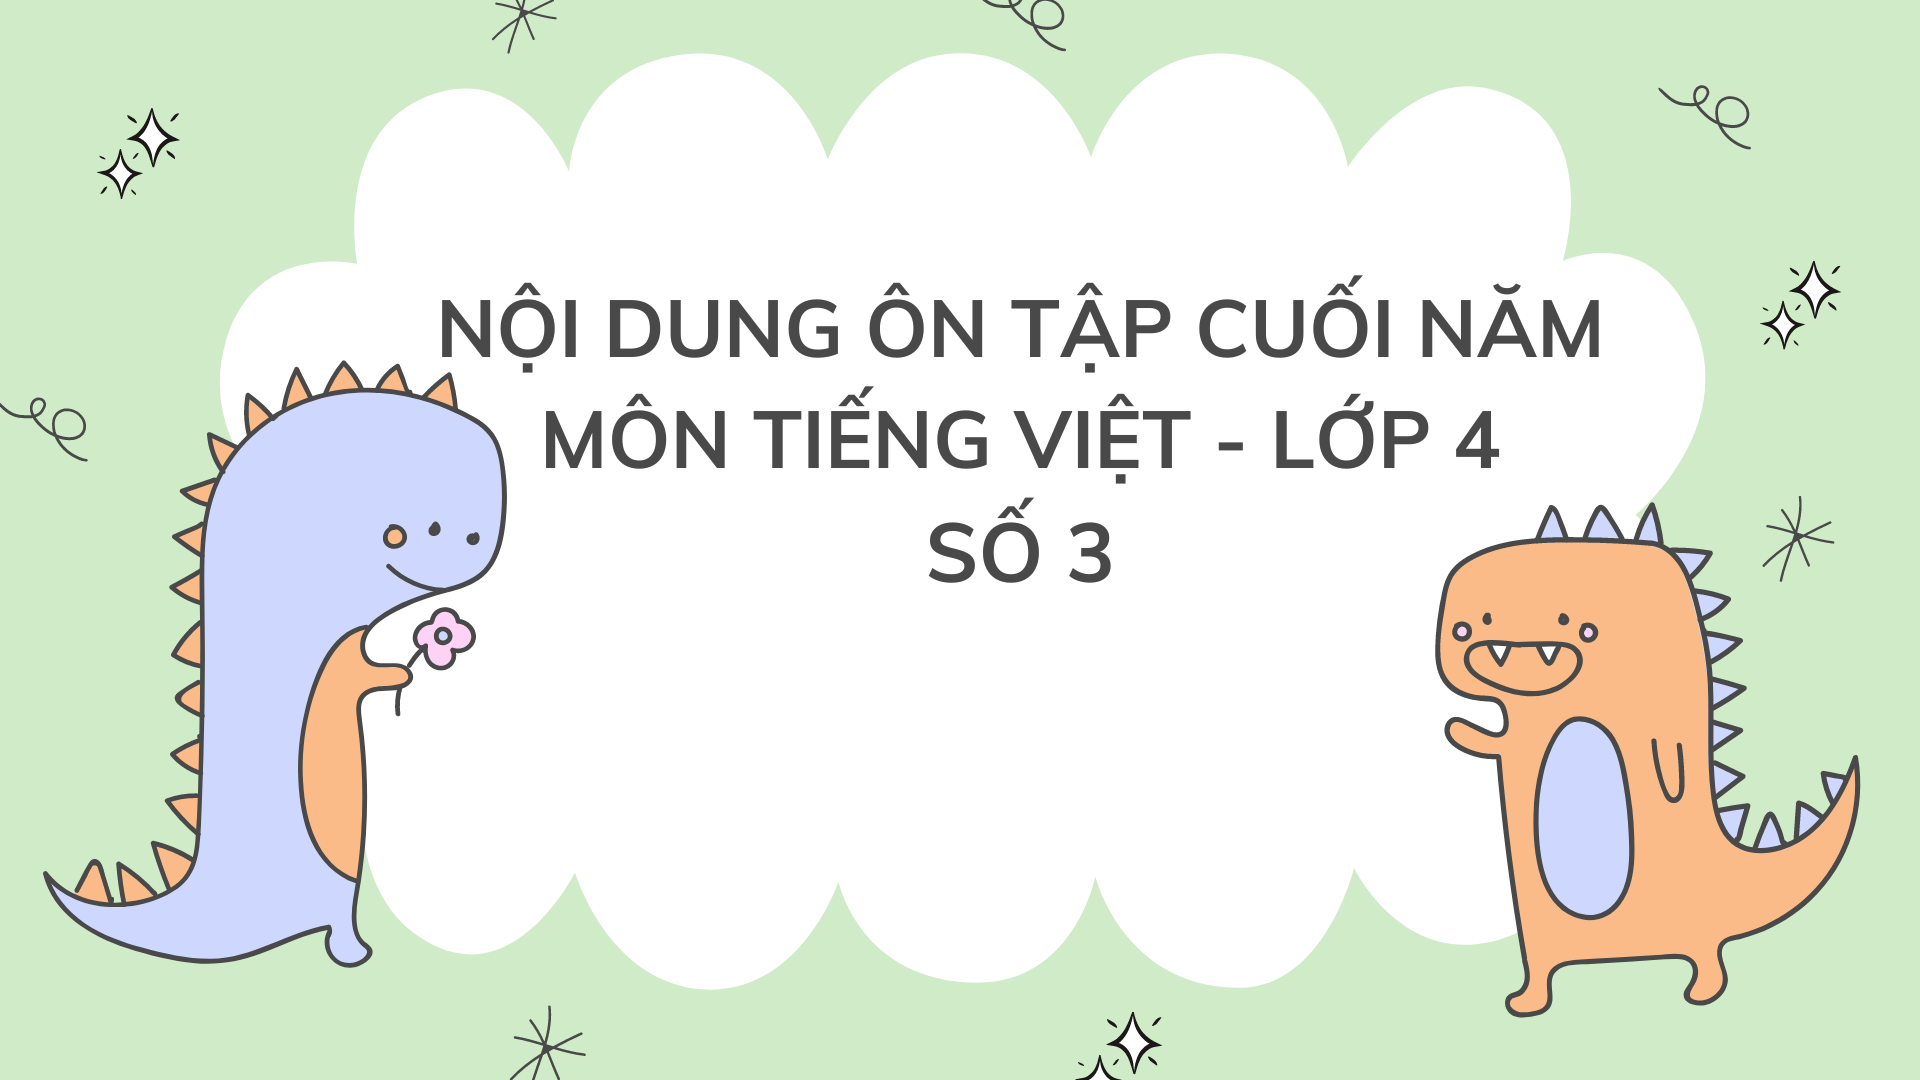 Nội dung ôn tập cuối năm môn Tiếng Việt Lớp 4 - Số 3